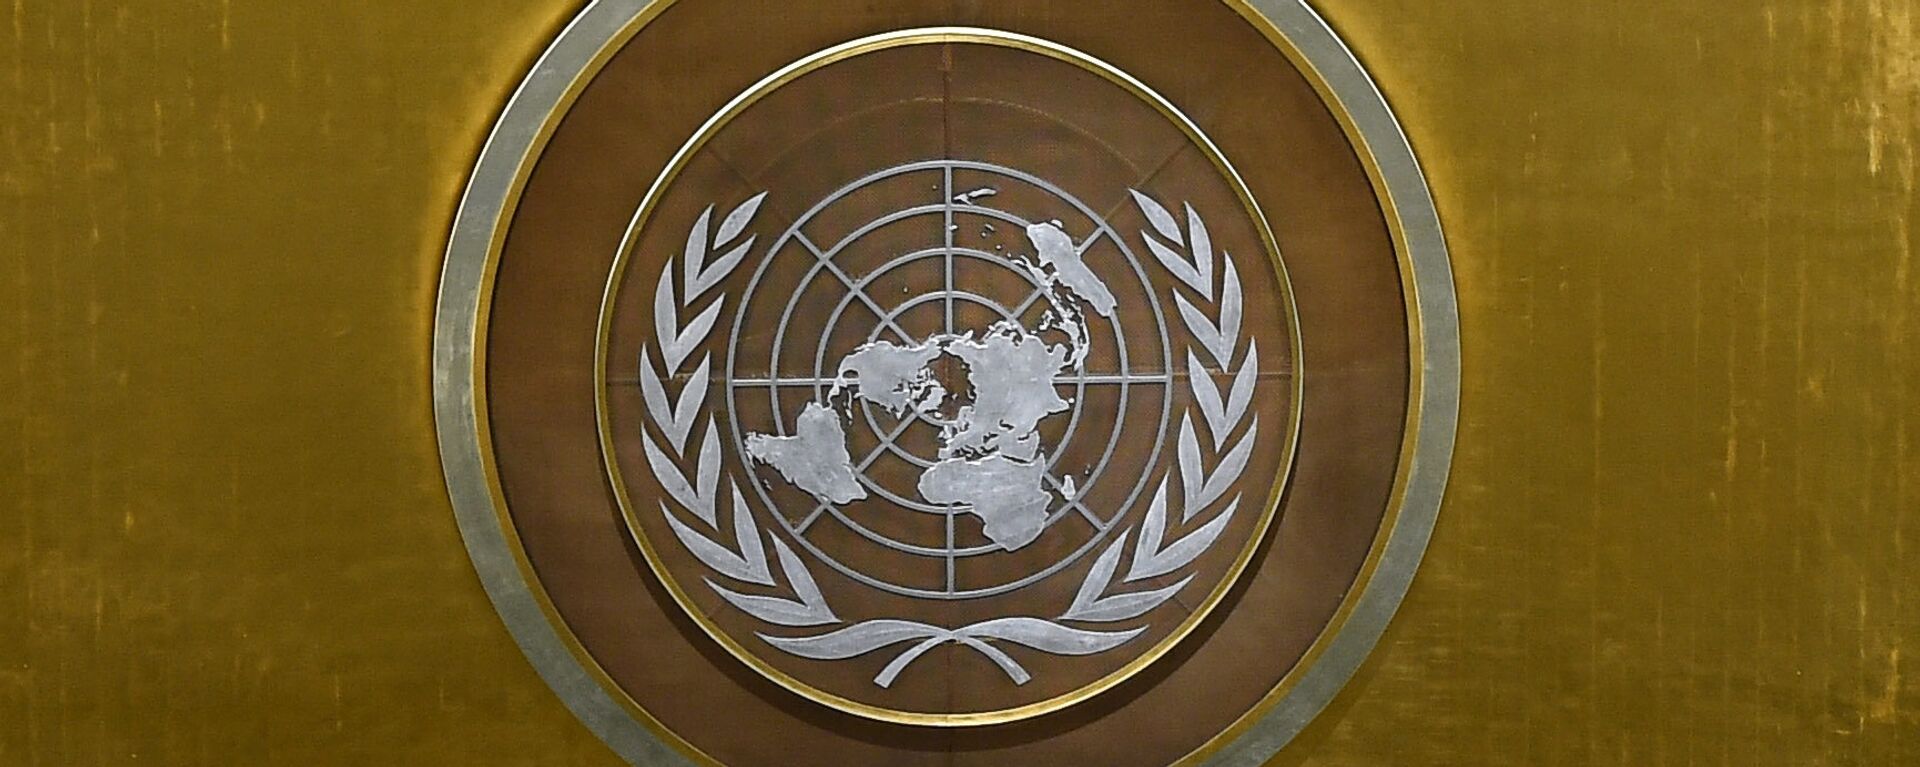 Эмблема ООН, архивное фото - Sputnik Таджикистан, 1920, 29.08.2021